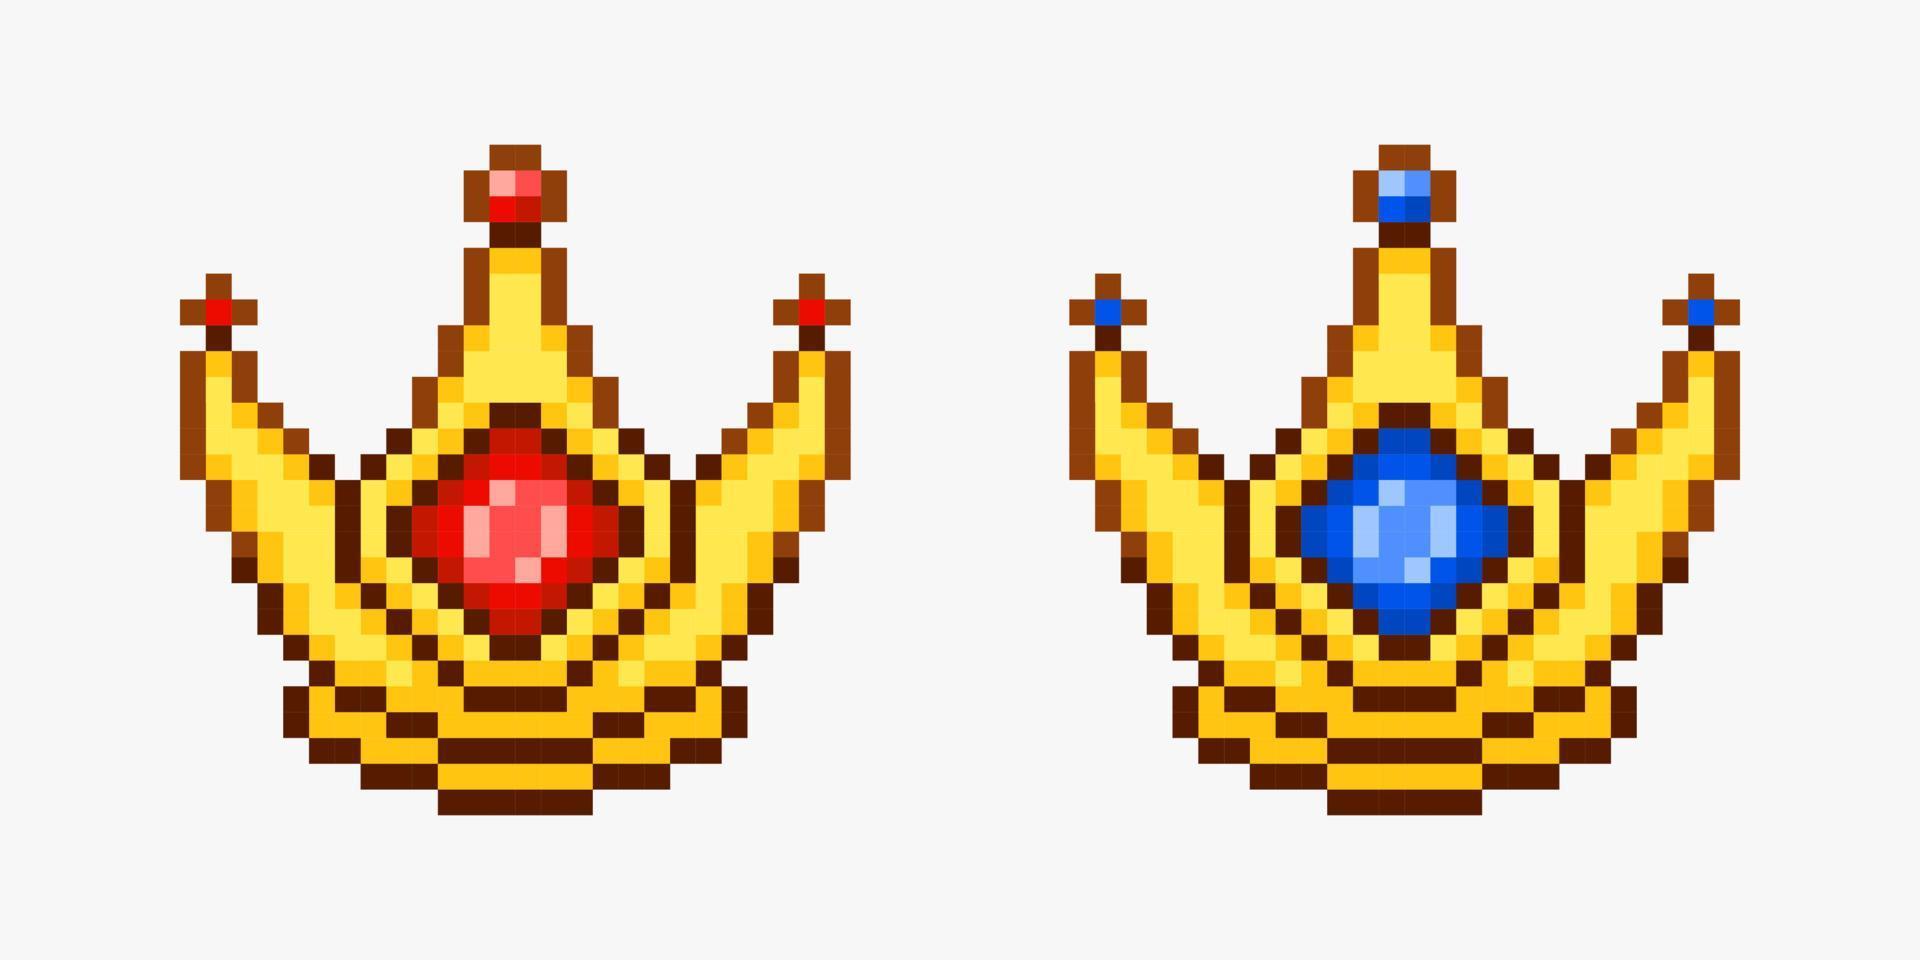 colección de coronas en estilo pixel art vector